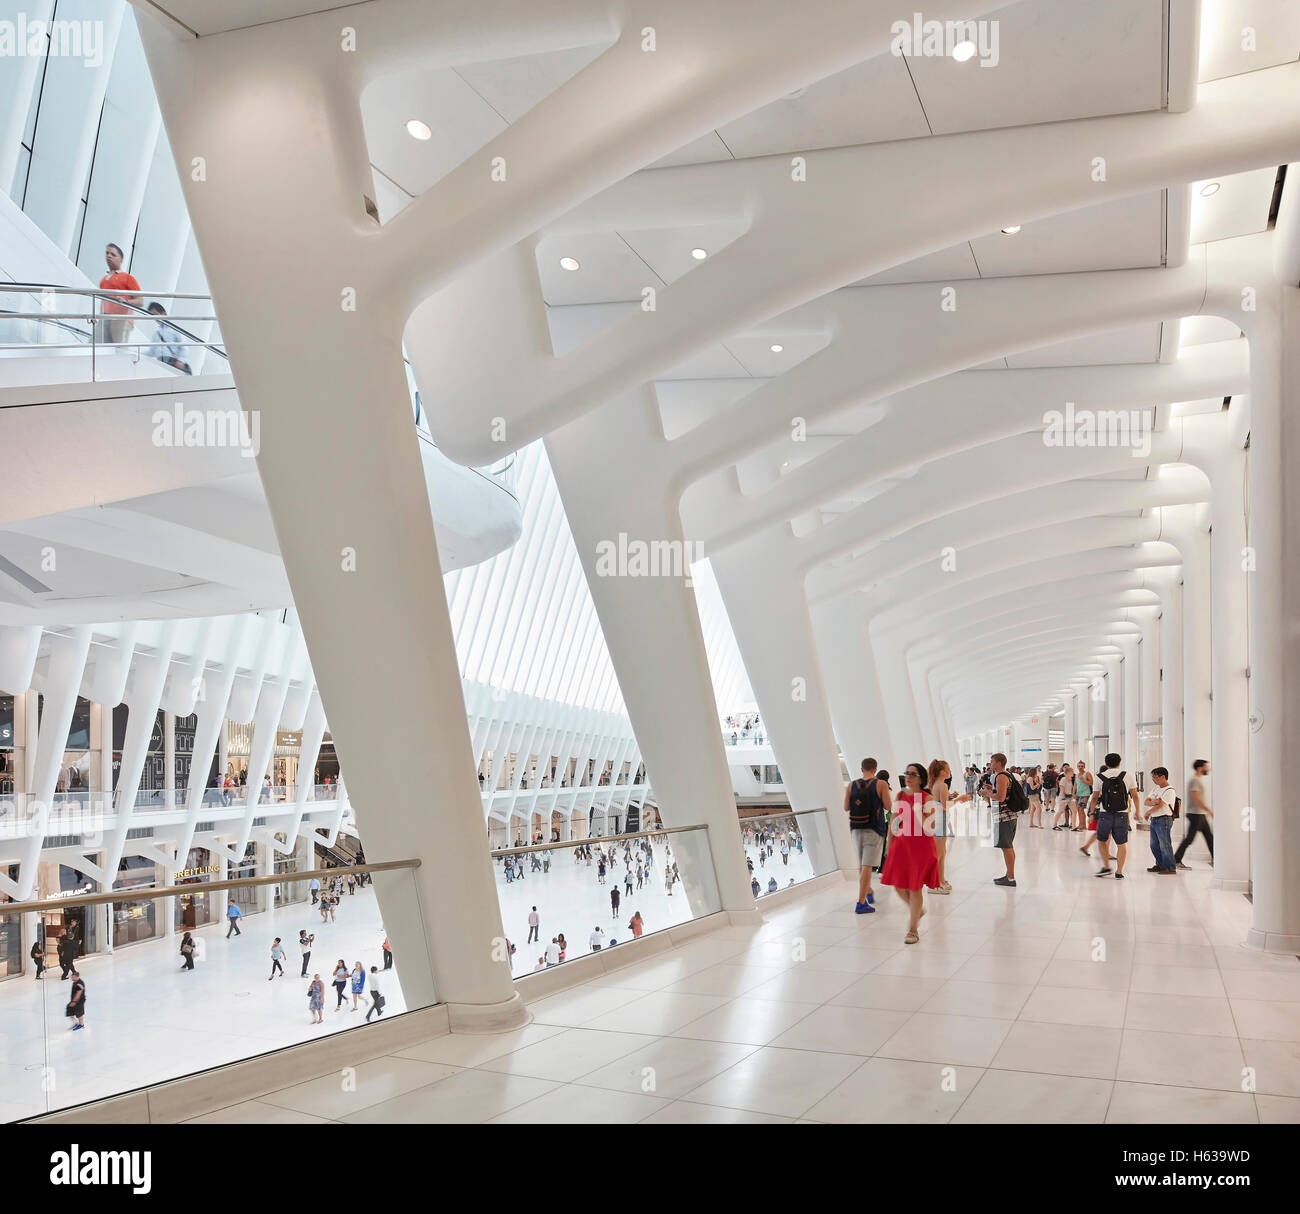 Kathedralenartigen Transit Halle Interieur vom Korridor aus gesehen. Das Oculus, World Trade Center Transportation Hub, New York, Vereinigte Staaten. Architekt: Santiago Calatrava, 2016. Stockfoto